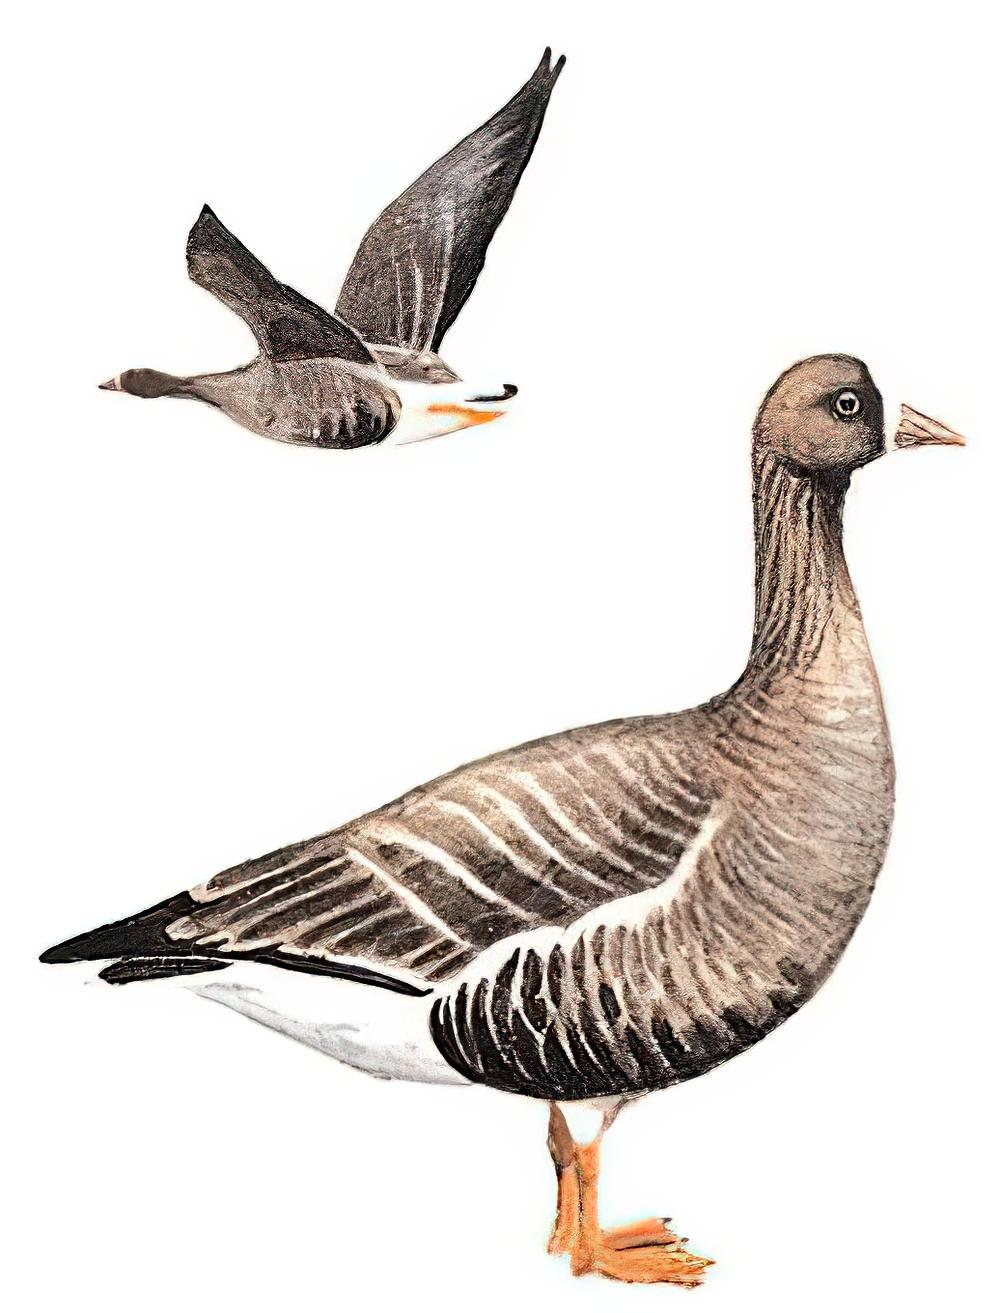 小白额雁 / Lesser White-fronted Goose / Anser erythropus